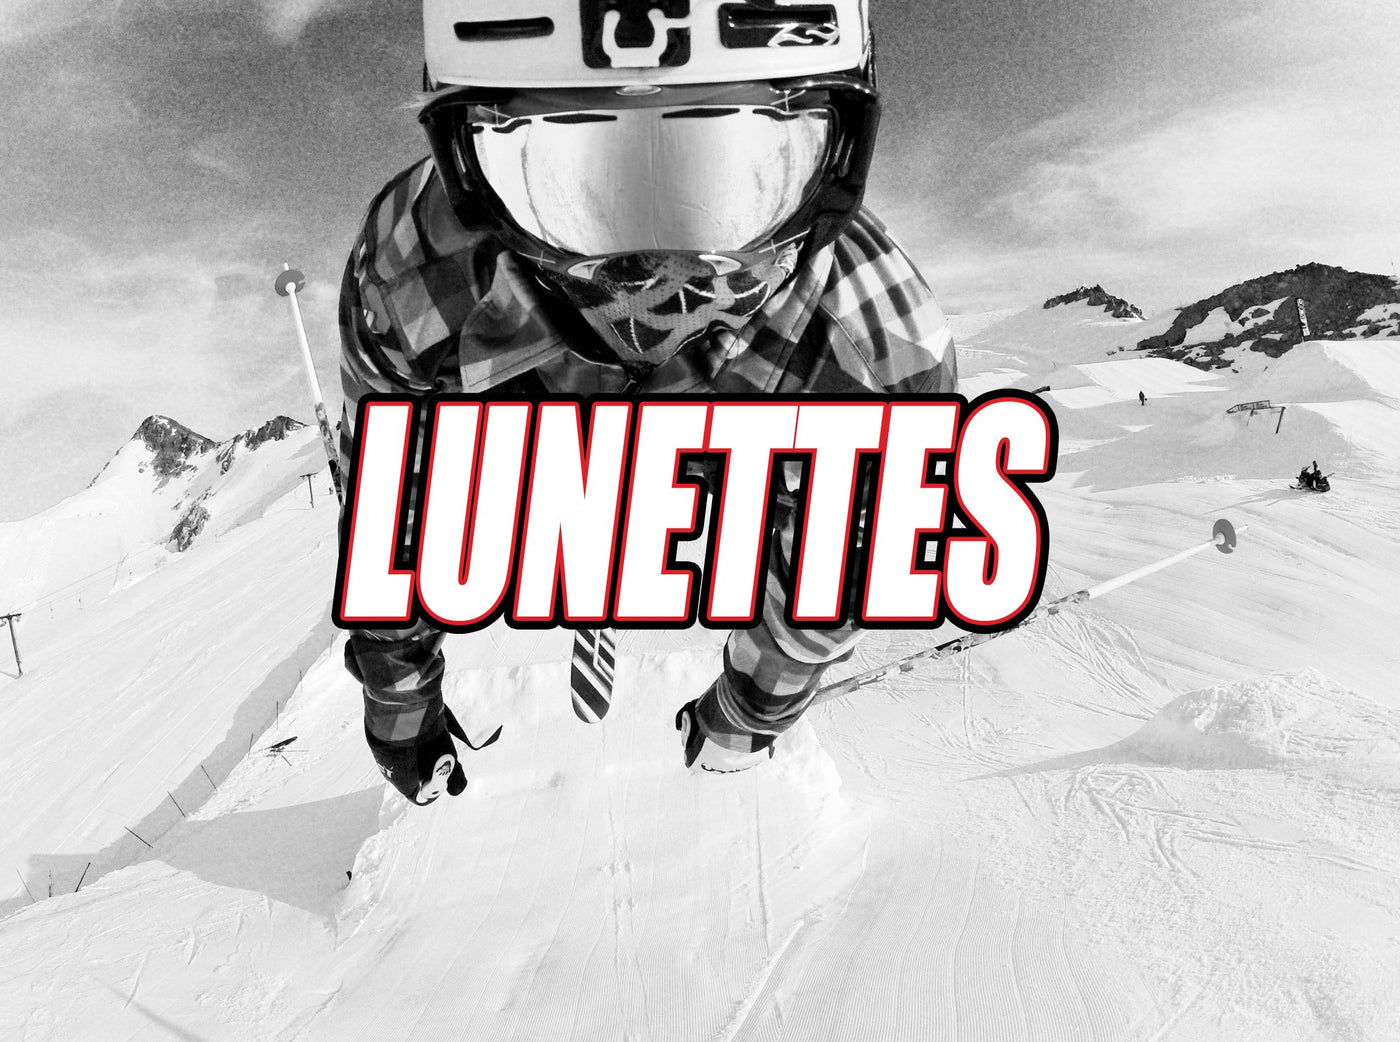 Ski Alpin Lunettes